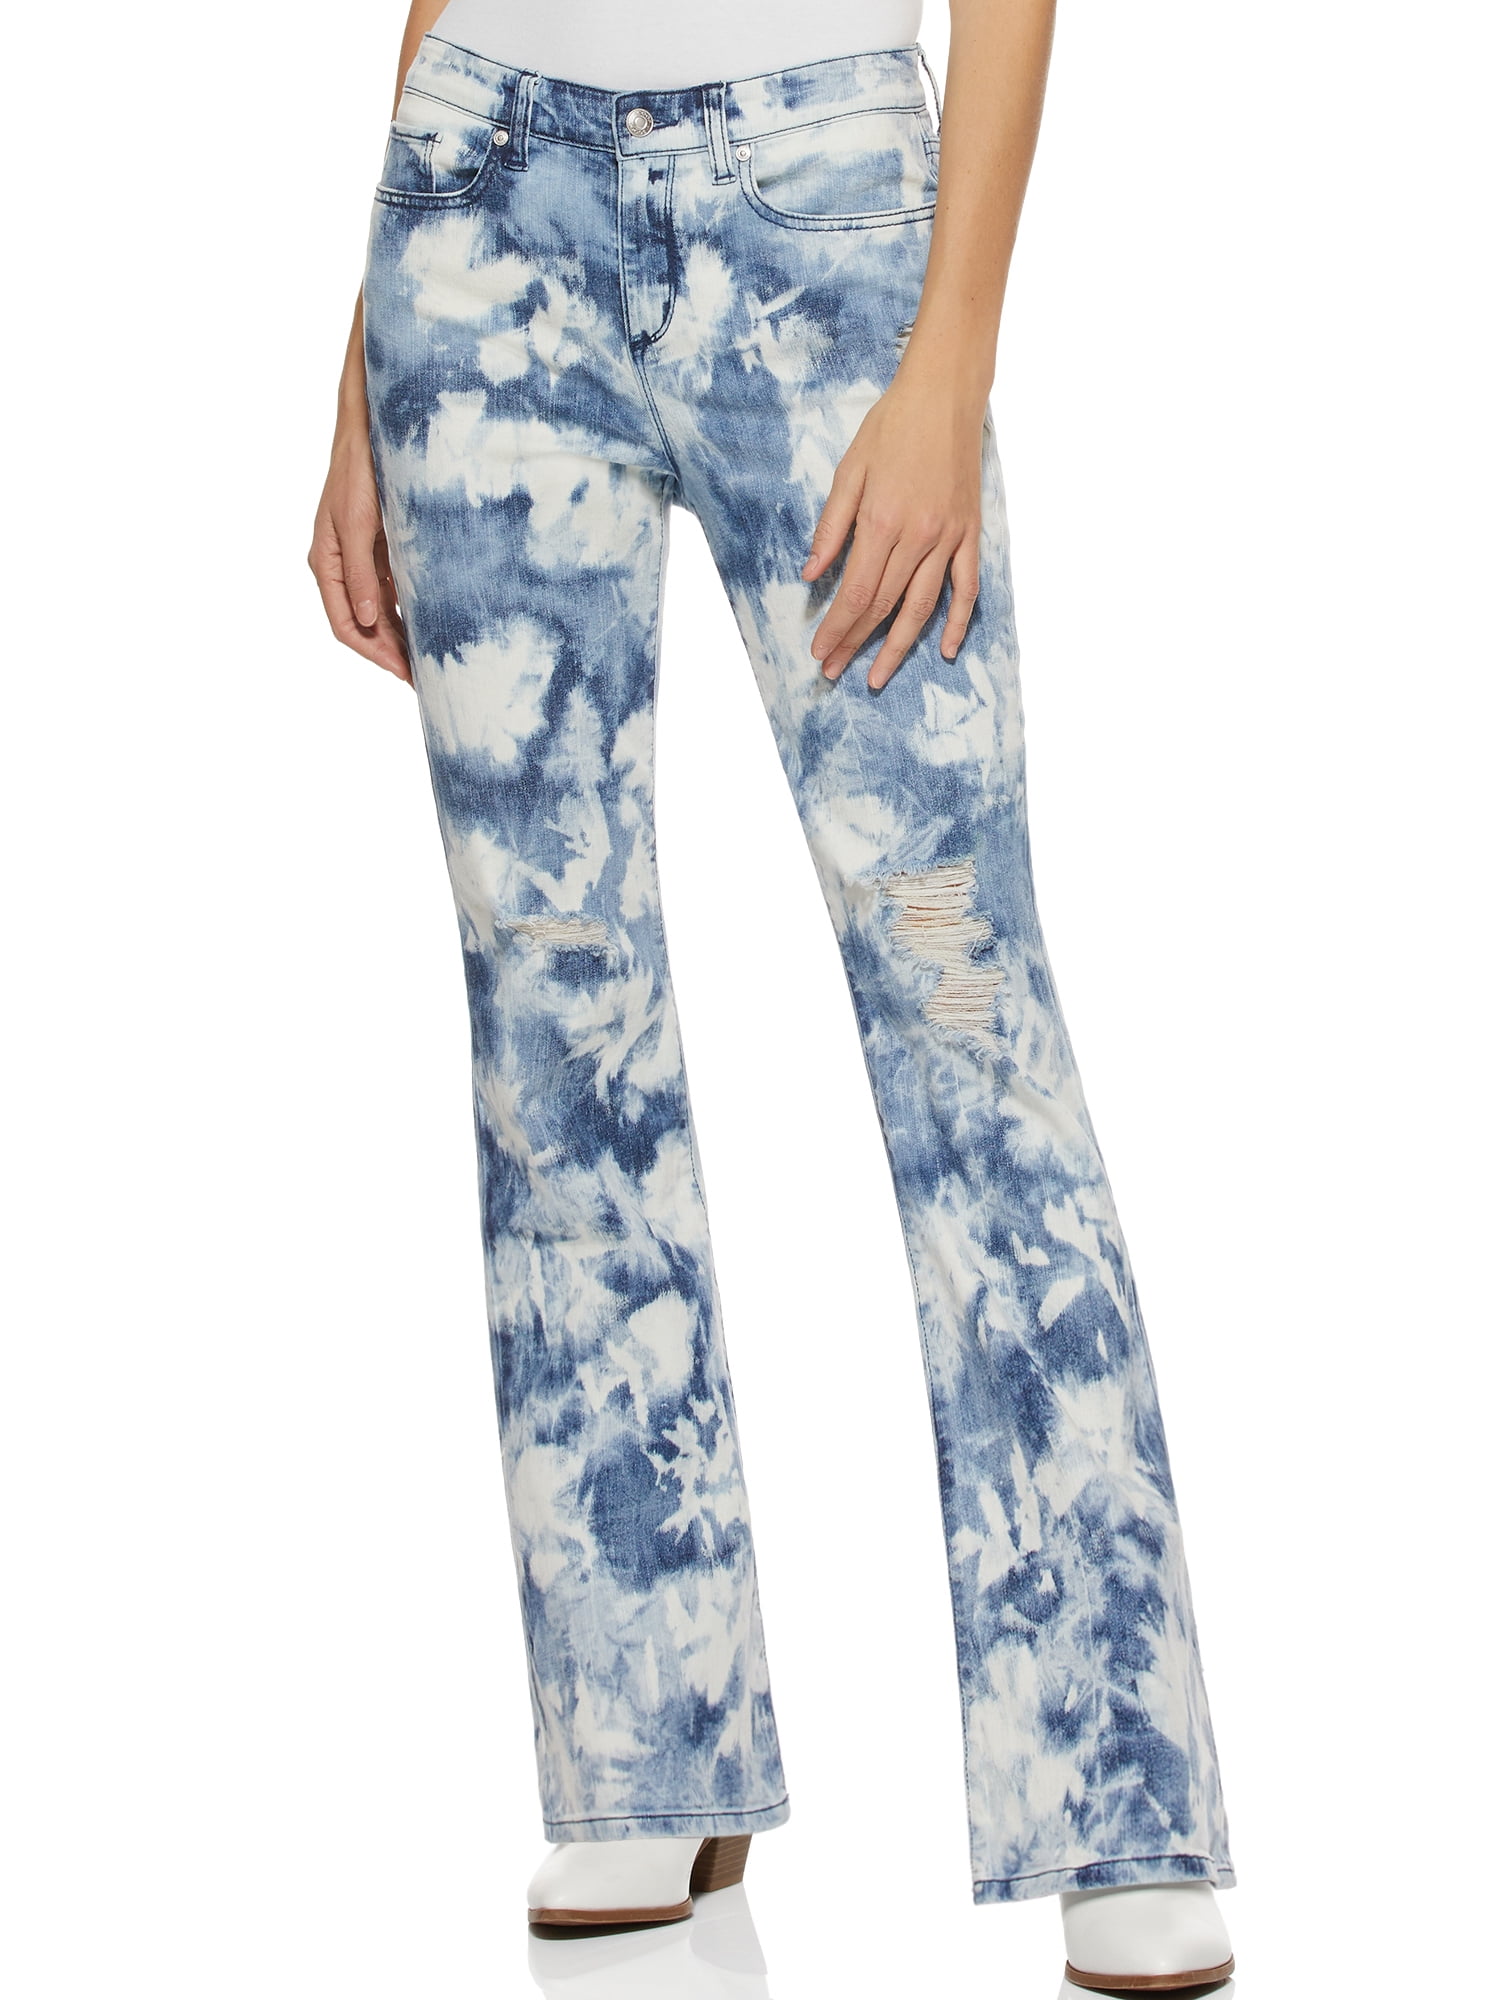 Scoop Tie Dye High Rise Flare Jeans Women's - Walmart.com